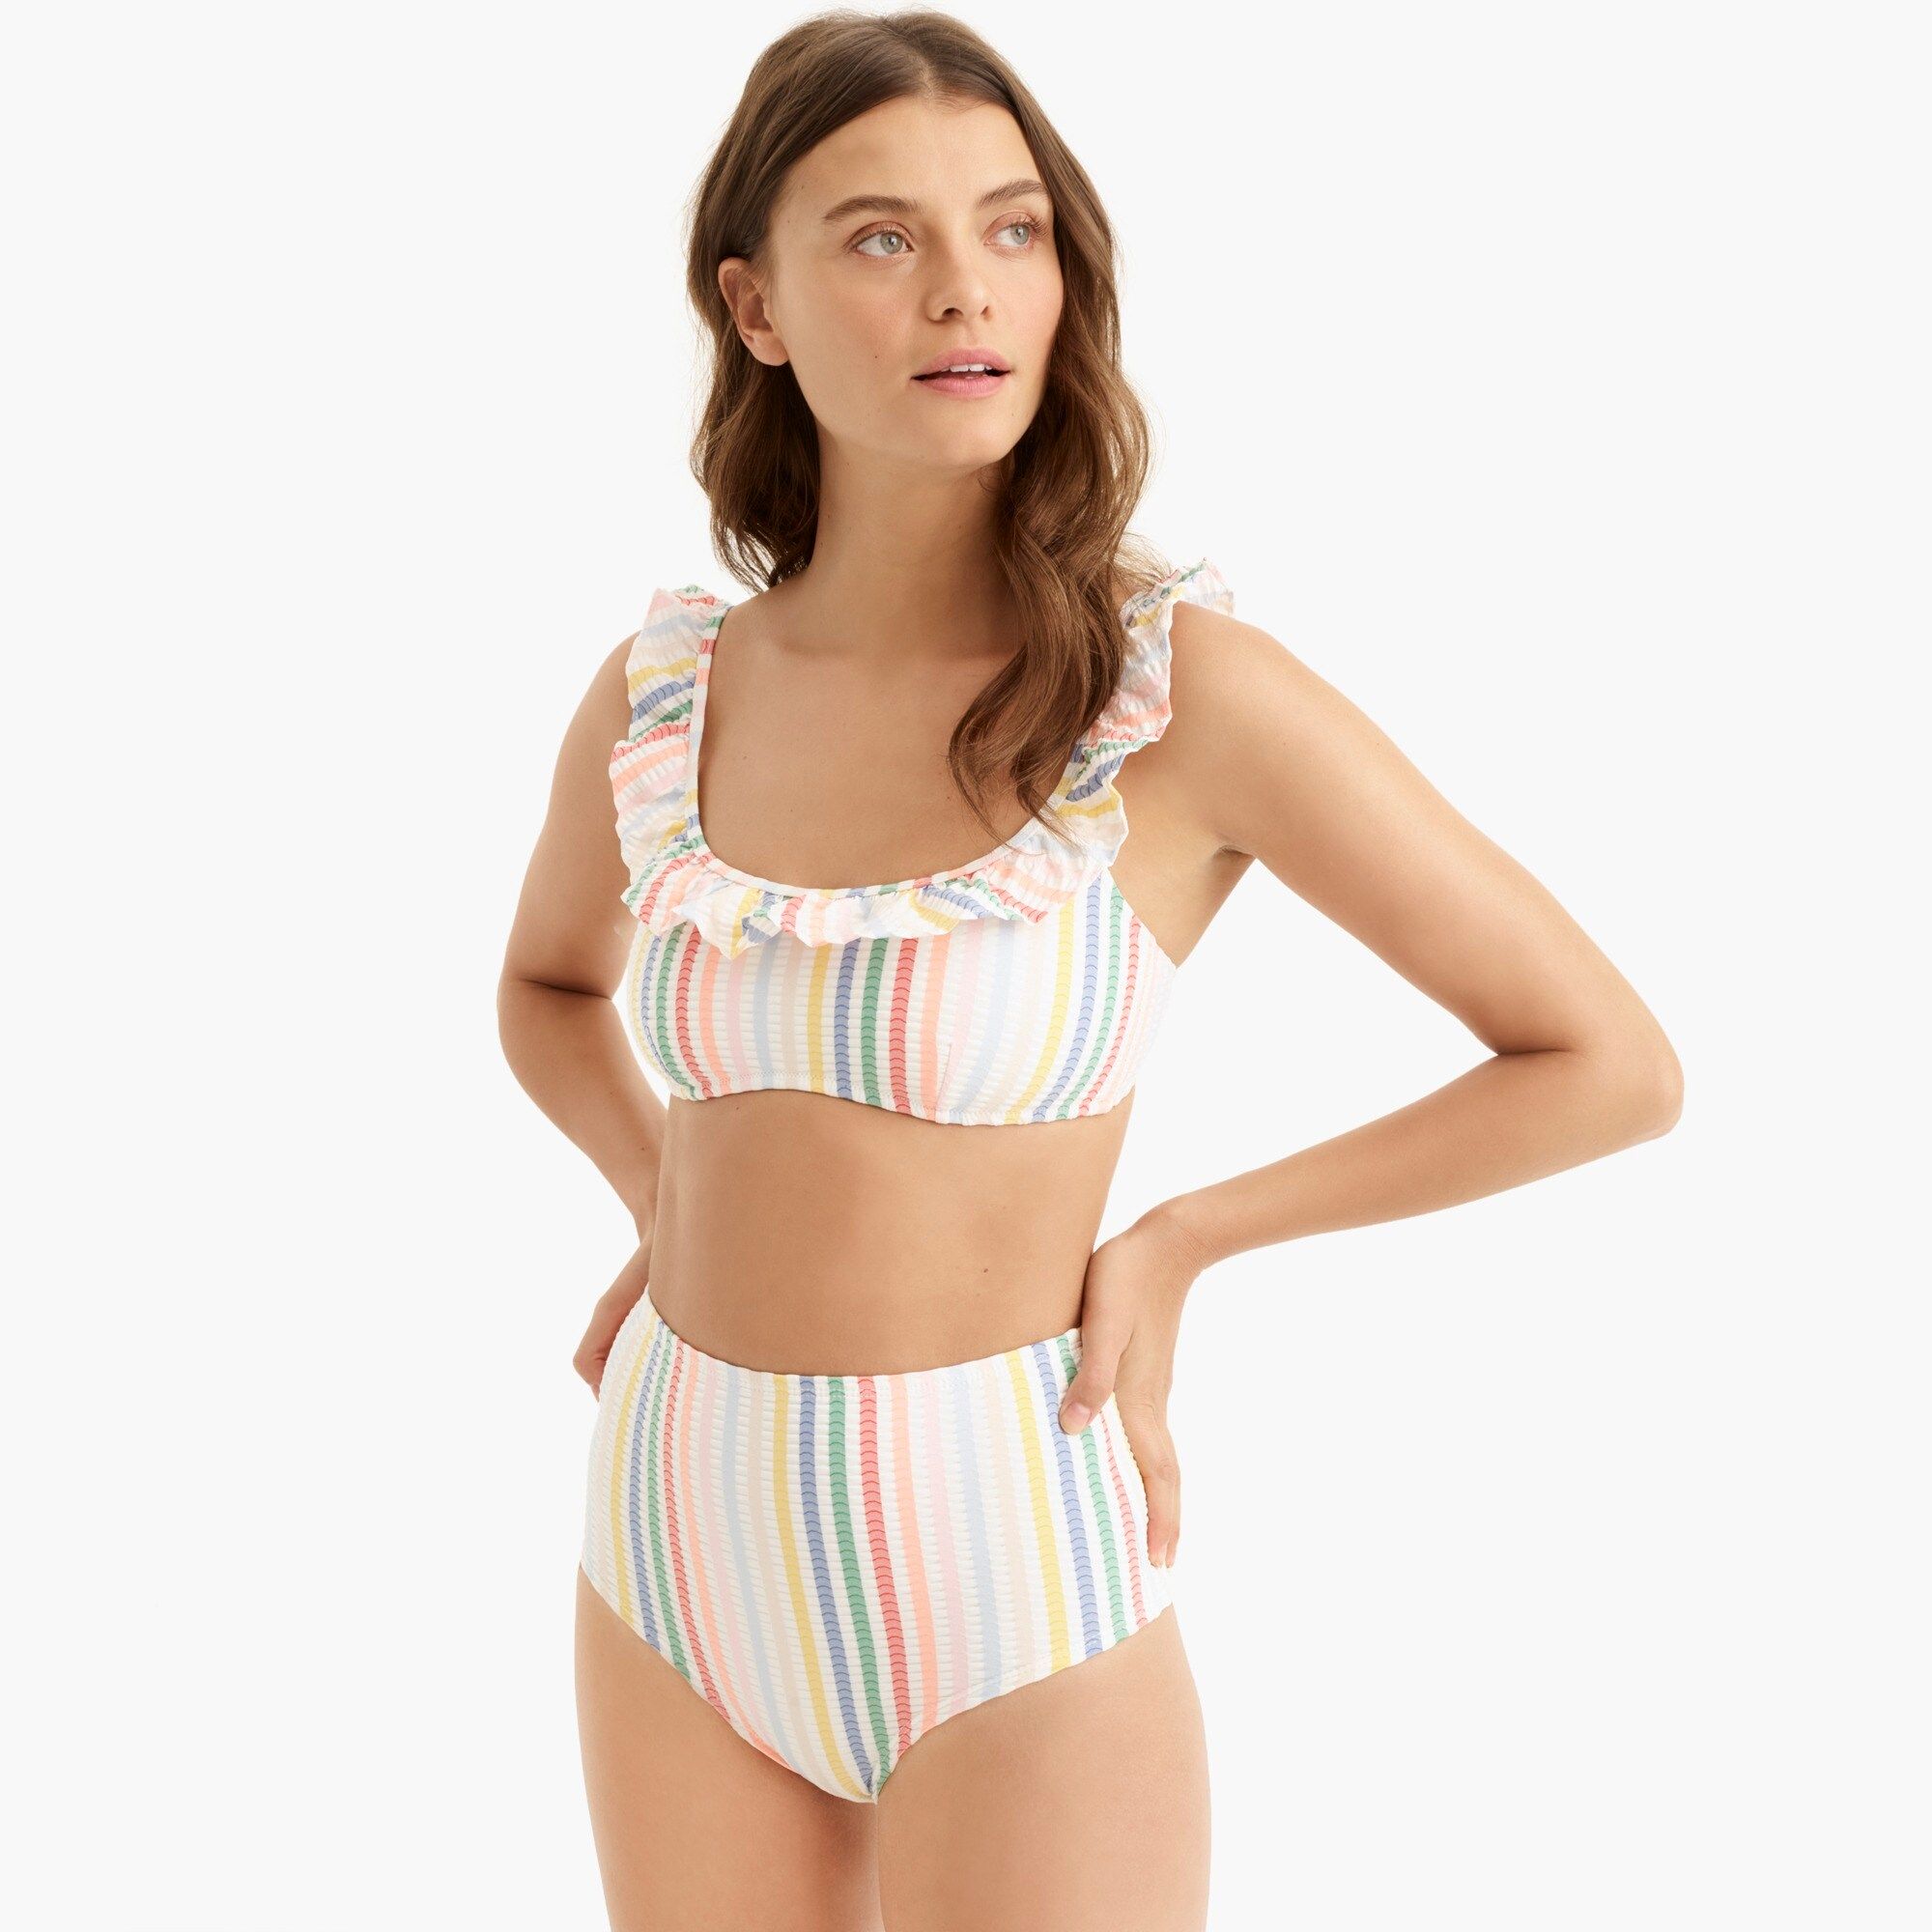 Ruffle bikini top in suckered rainbow stripe | J.Crew US